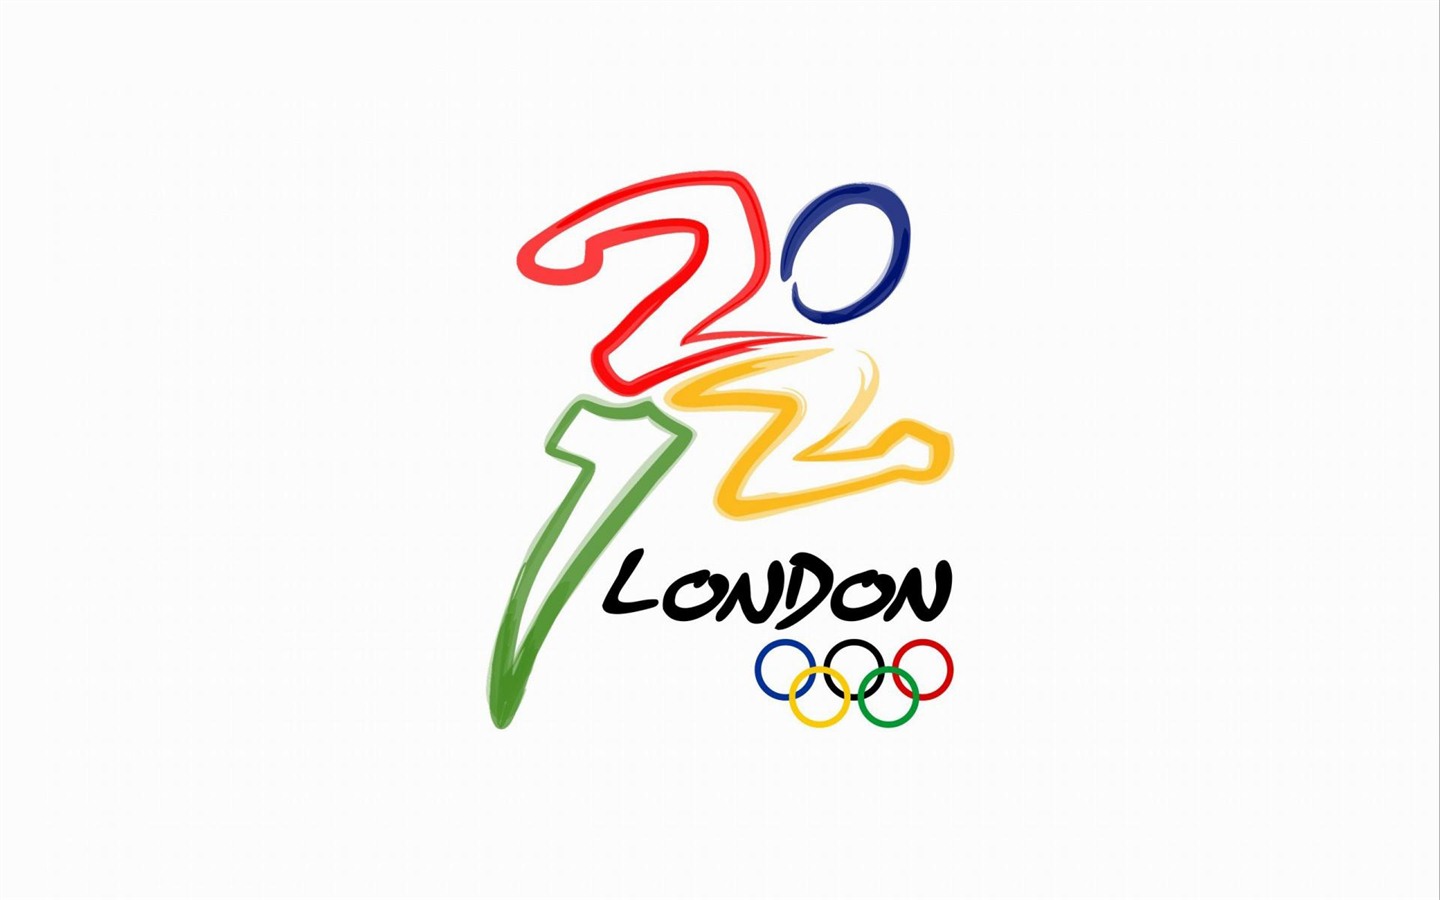 Londres 2012 Olimpiadas fondos temáticos (2) #22 - 1440x900